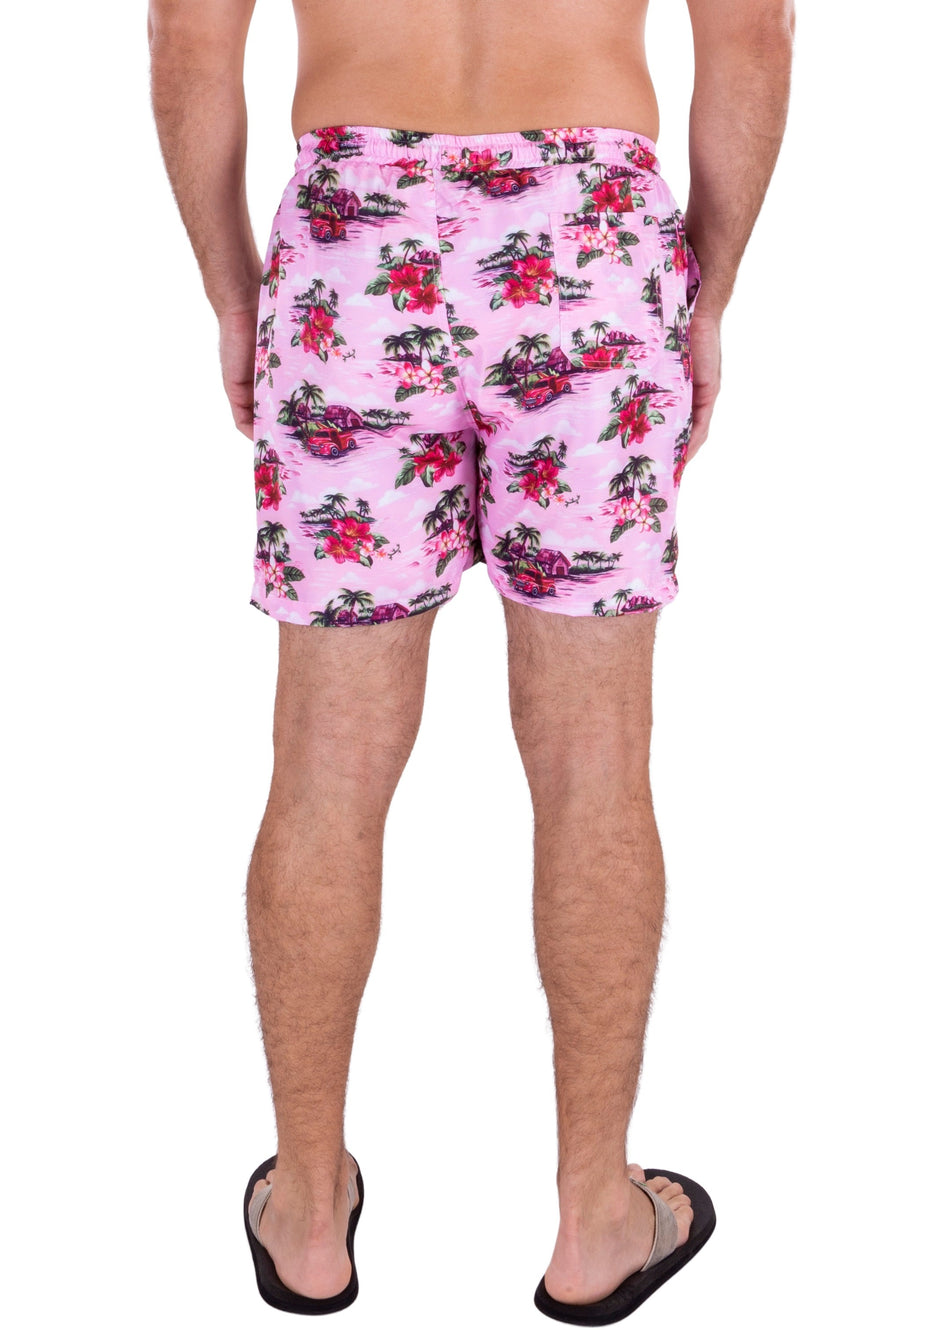 223135 - Pink Tropical Print Shorts